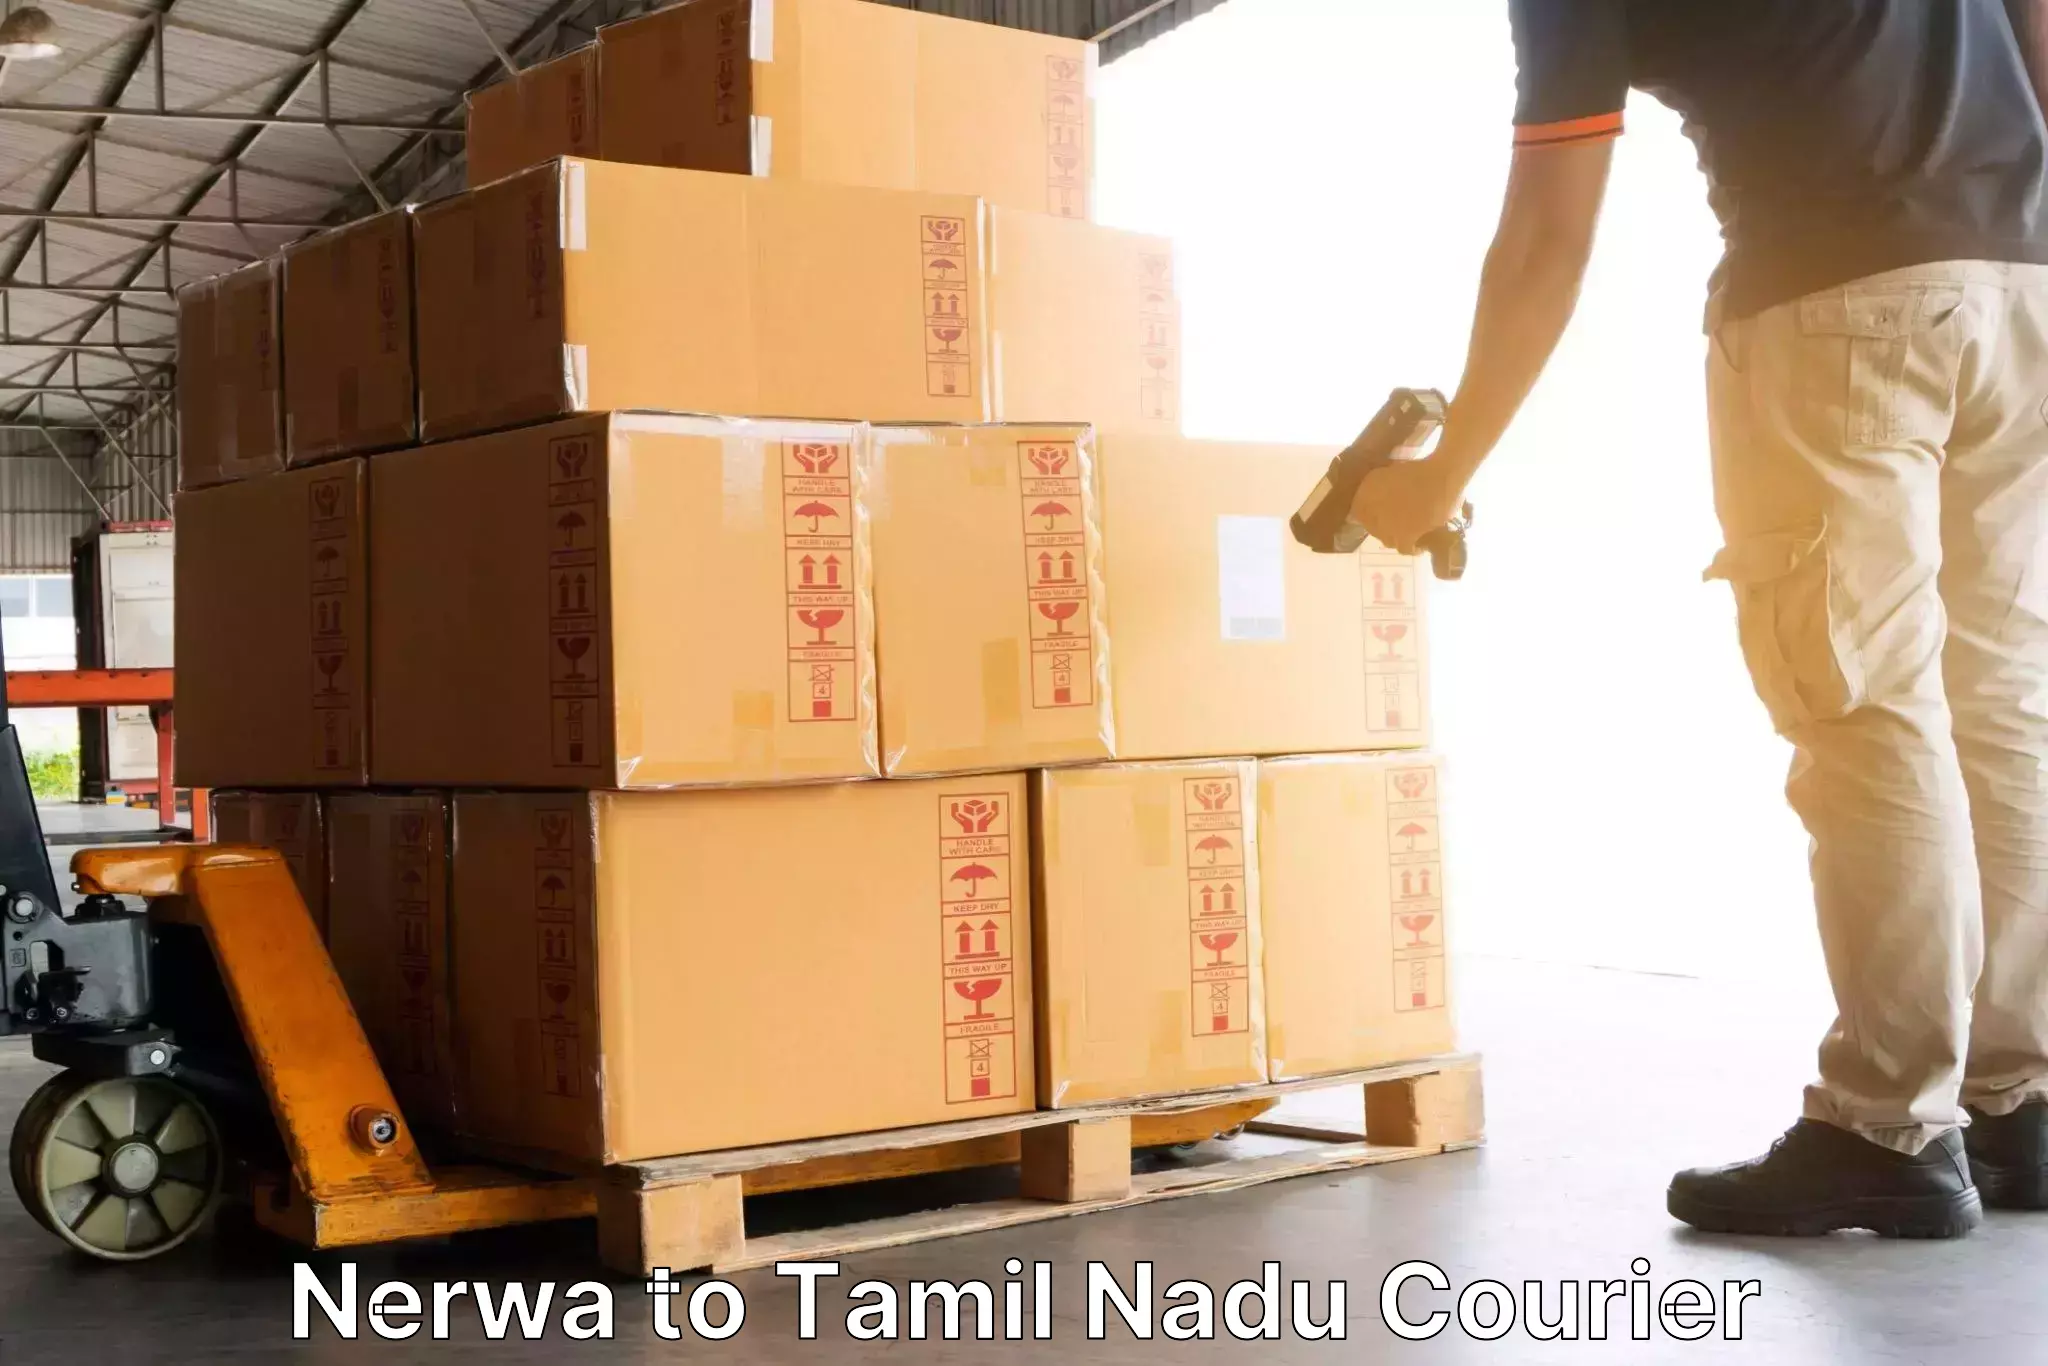 User-friendly courier app Nerwa to Ambasamudram